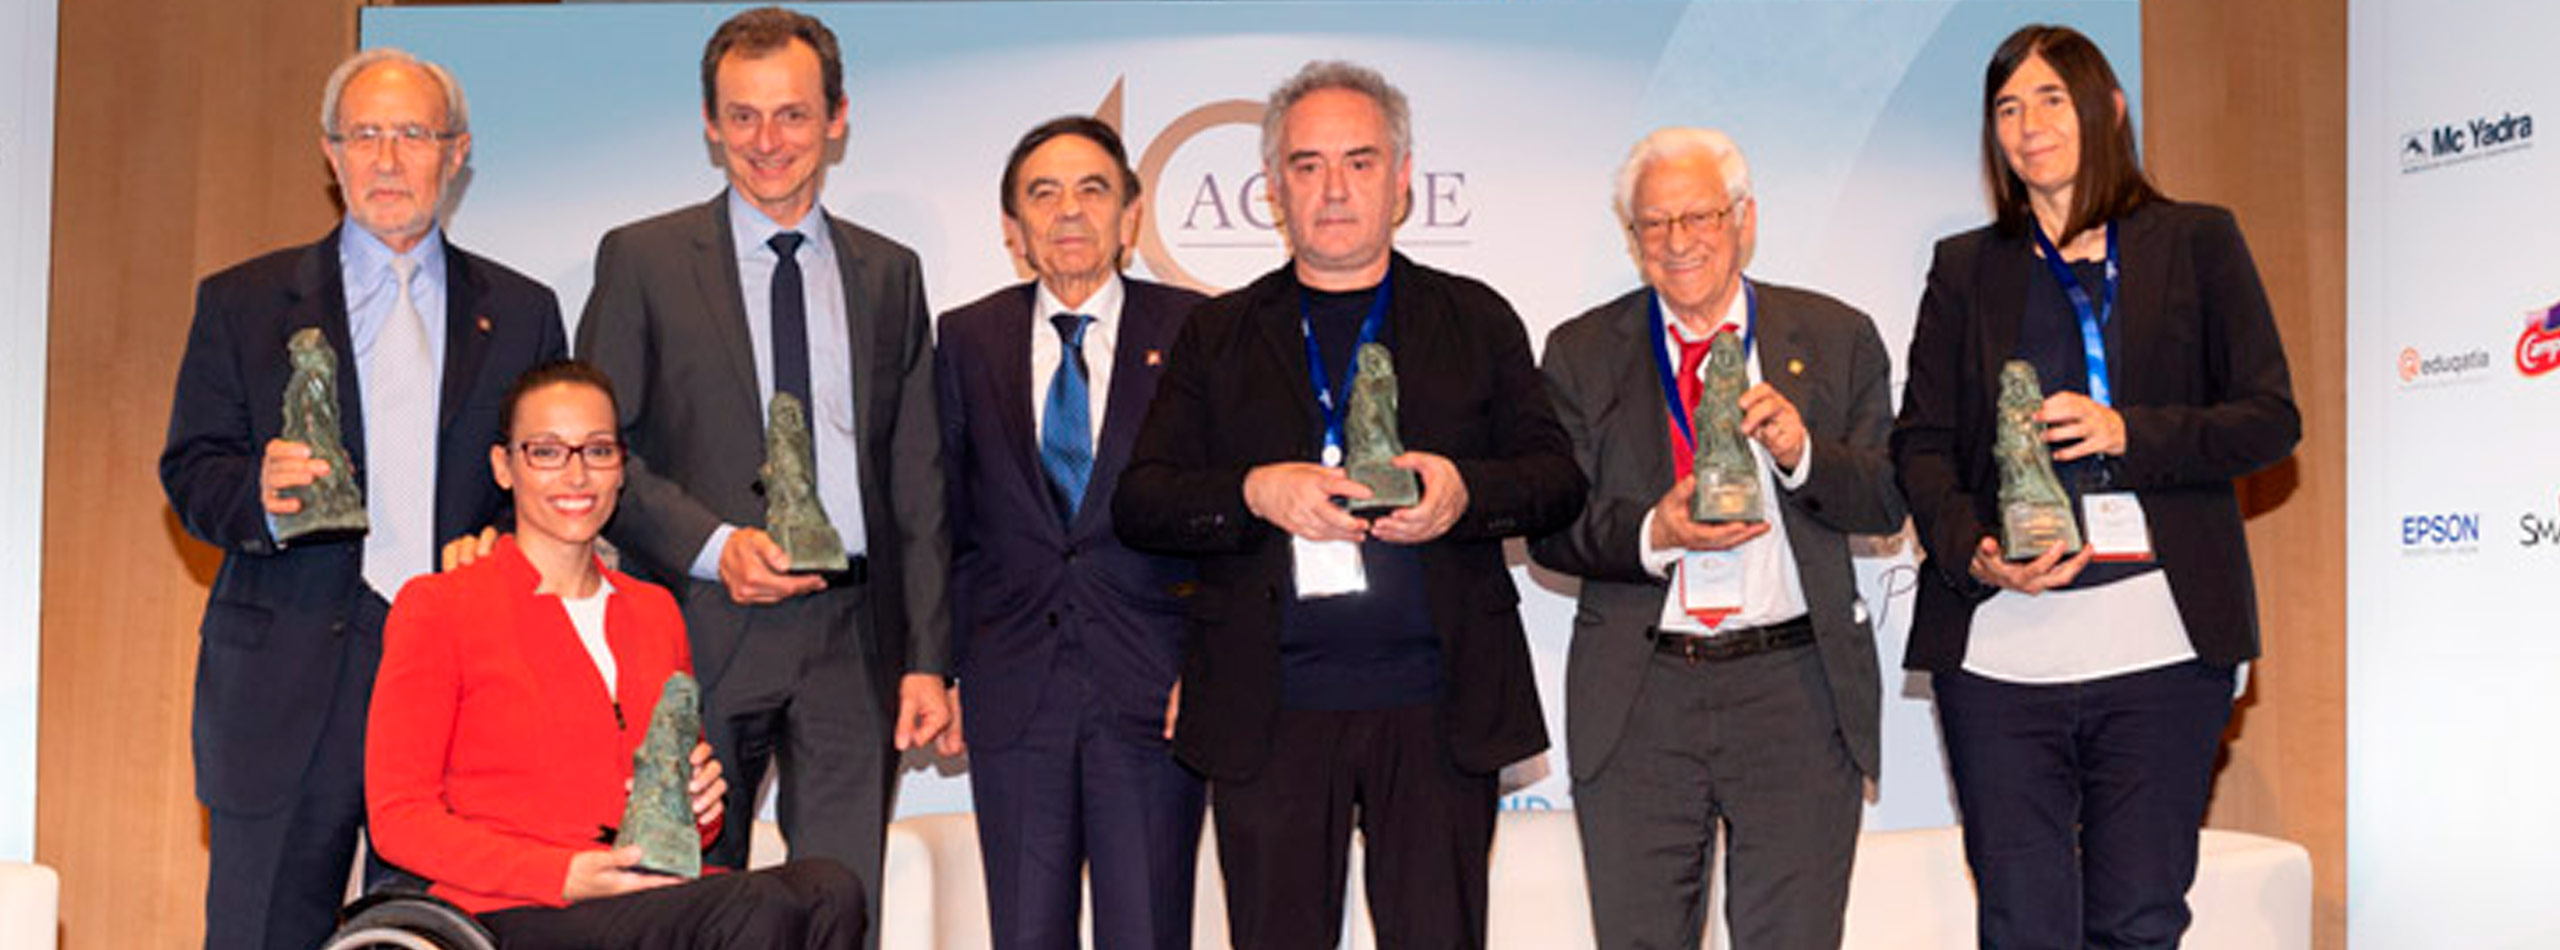 Teresa Perales y Ferran Adrià, reconocidos con los Premios 'Educación y Libertad' de ACADE